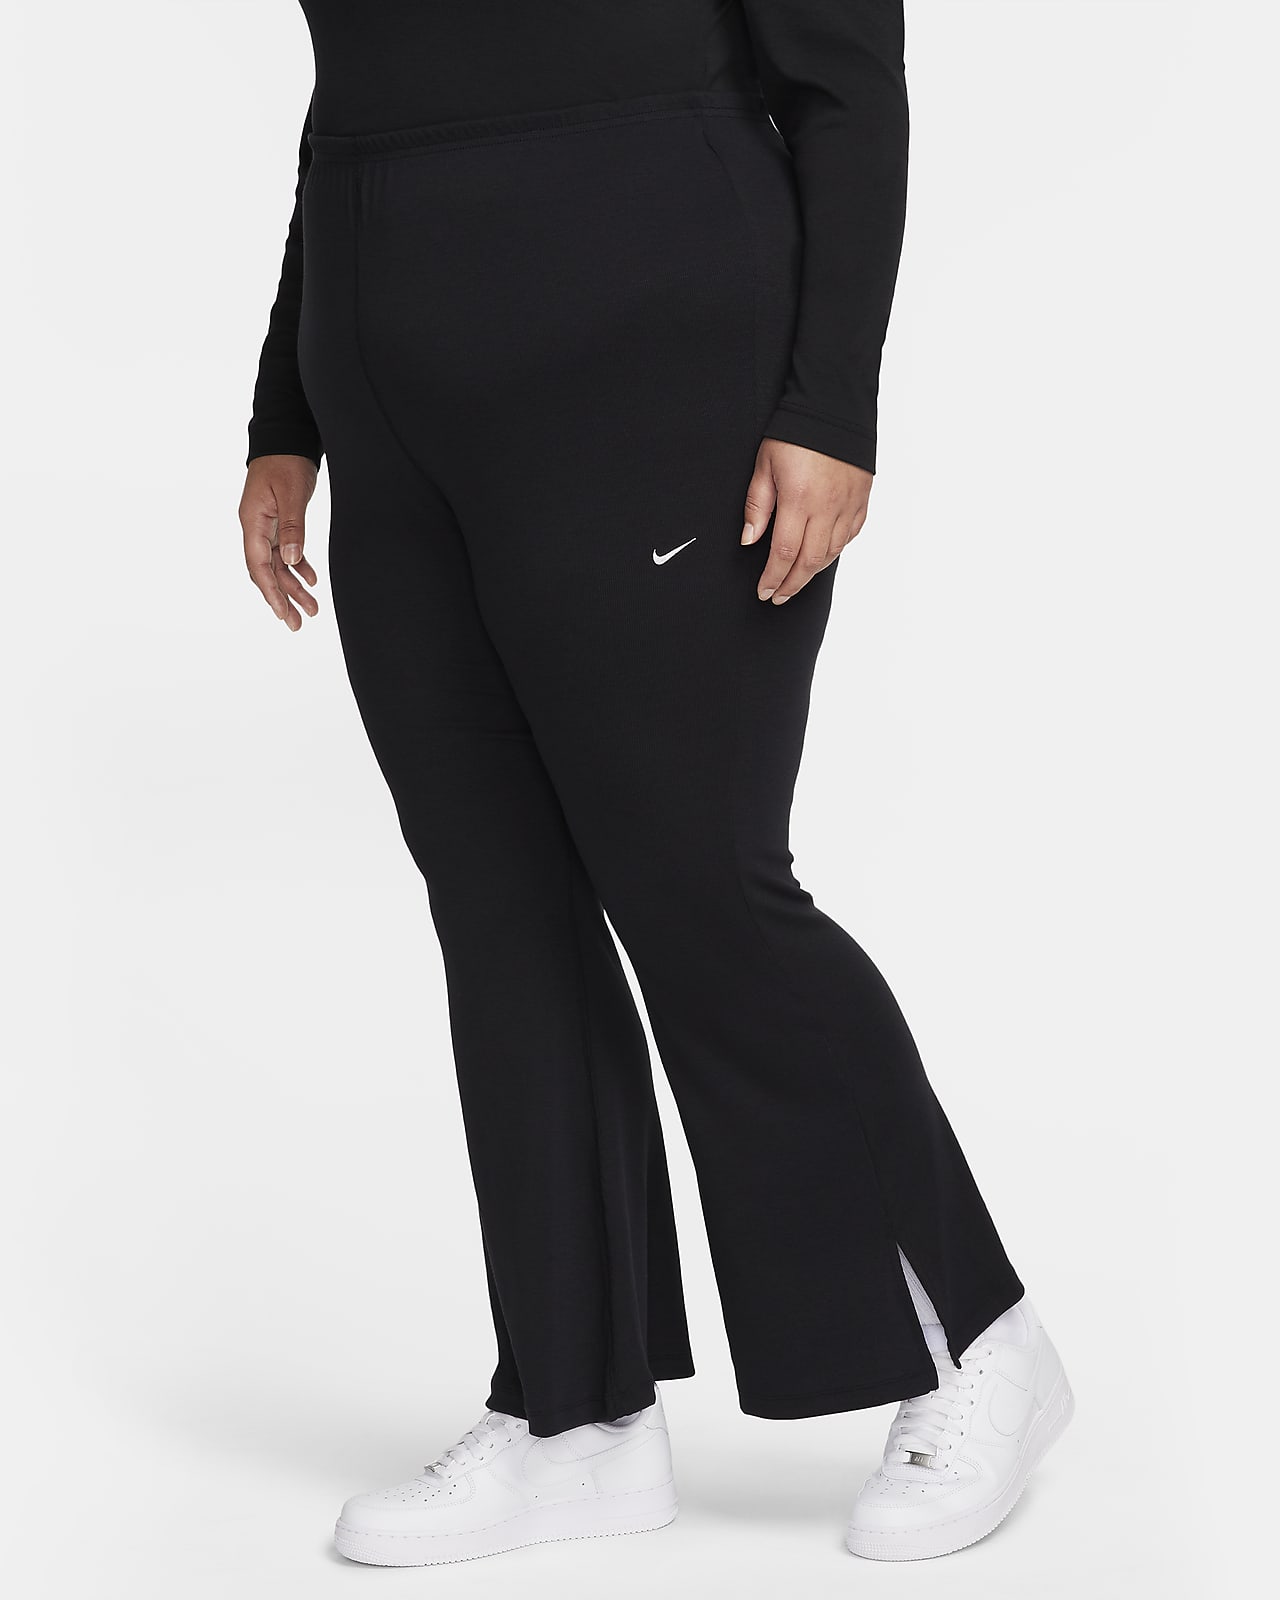 Leggings justas de perna larga minicaneladas Nike Sportswear Chill Knit para mulher (tamanhos grandes)